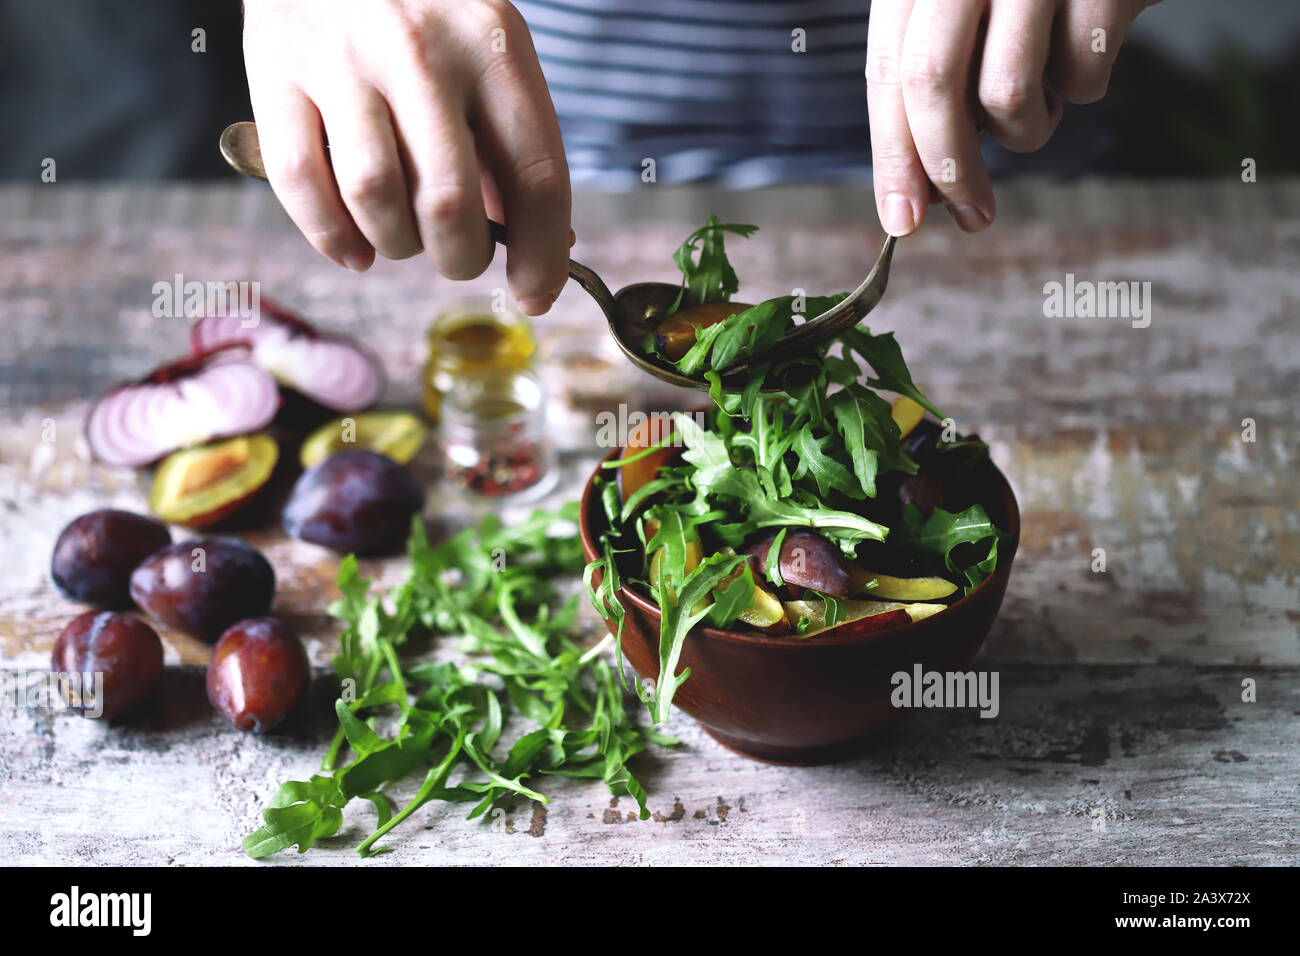 Männliche Hände gemischter Salat in eine Schüssel mit Löffel und Gabel. Leichten Salat mit Ruccola und Pflaumen. Herbst pflaume Salat. Gesundes Essen. Selektive konzentrieren. Makro. Stockfoto